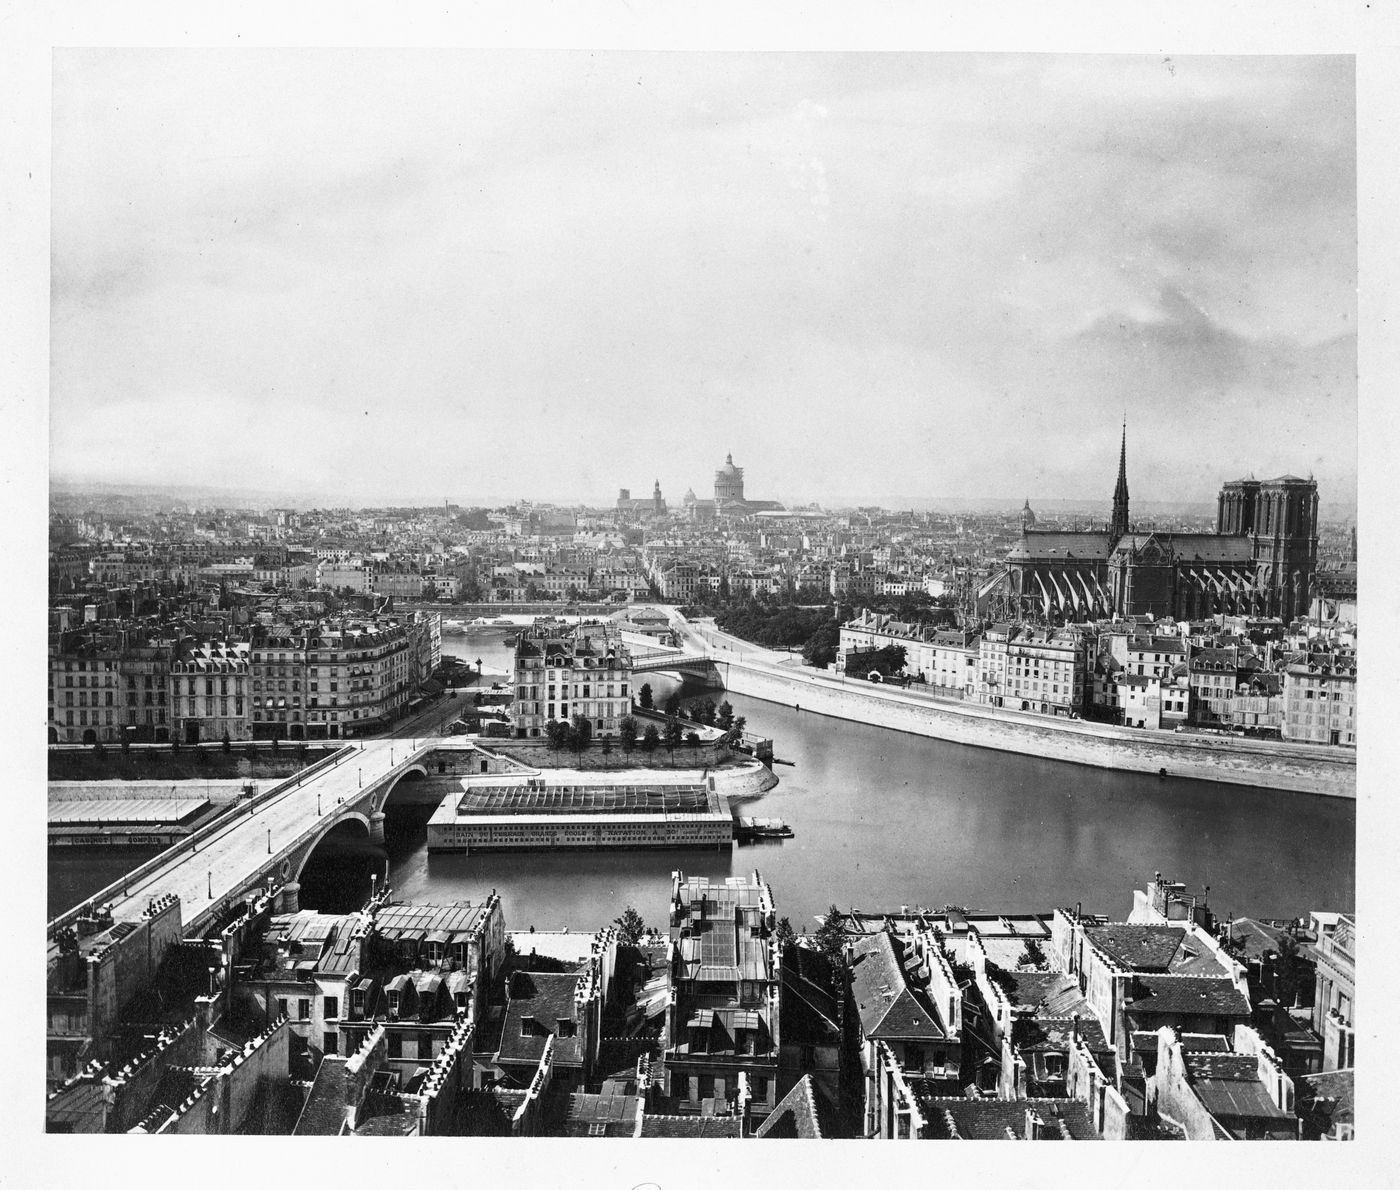 General view of the city from Saint-Gervais, Saint-Protais [?] showing Île Saint-Louis, Notre-Dame, Panthéon, Saint-Étienne-du-Mont and come of Val-de-Grâce, Paris, France